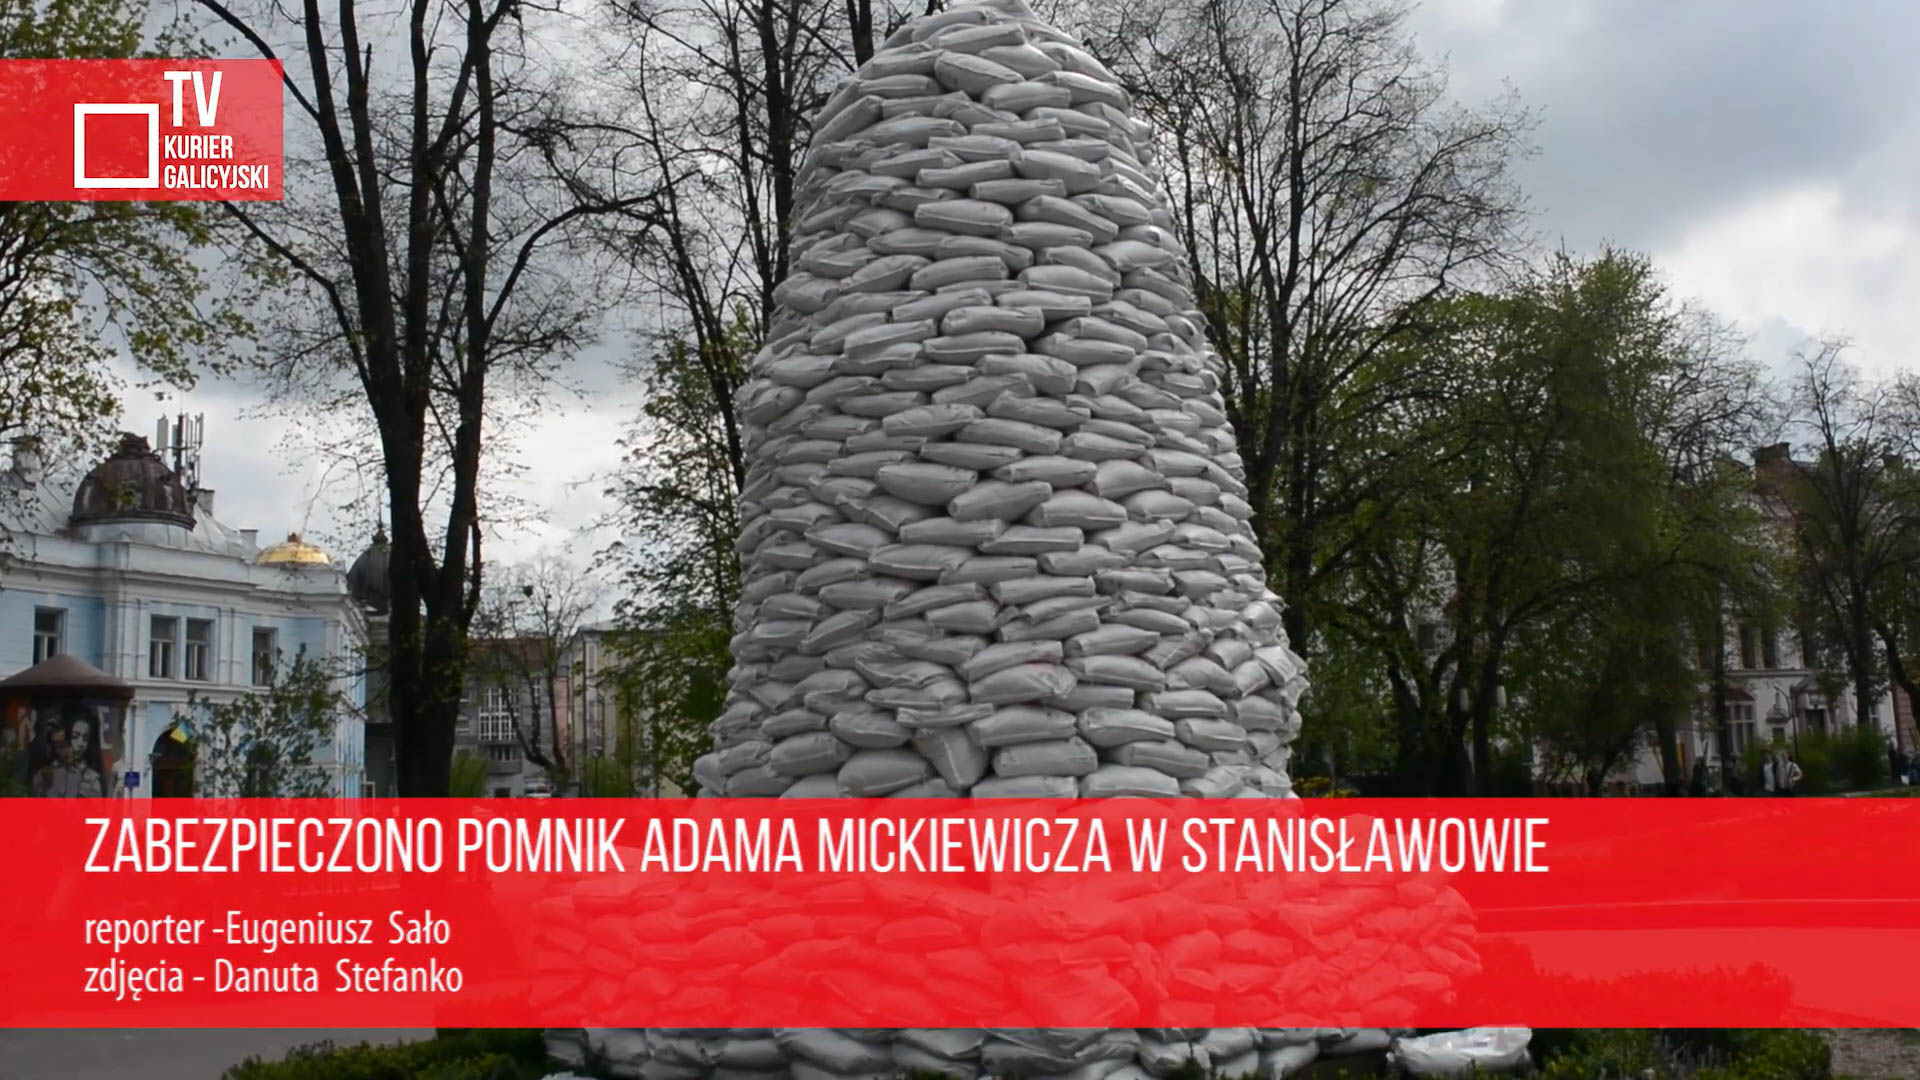 В Івано-Франківську захищено пам’ятник Адаму Міцкевичу